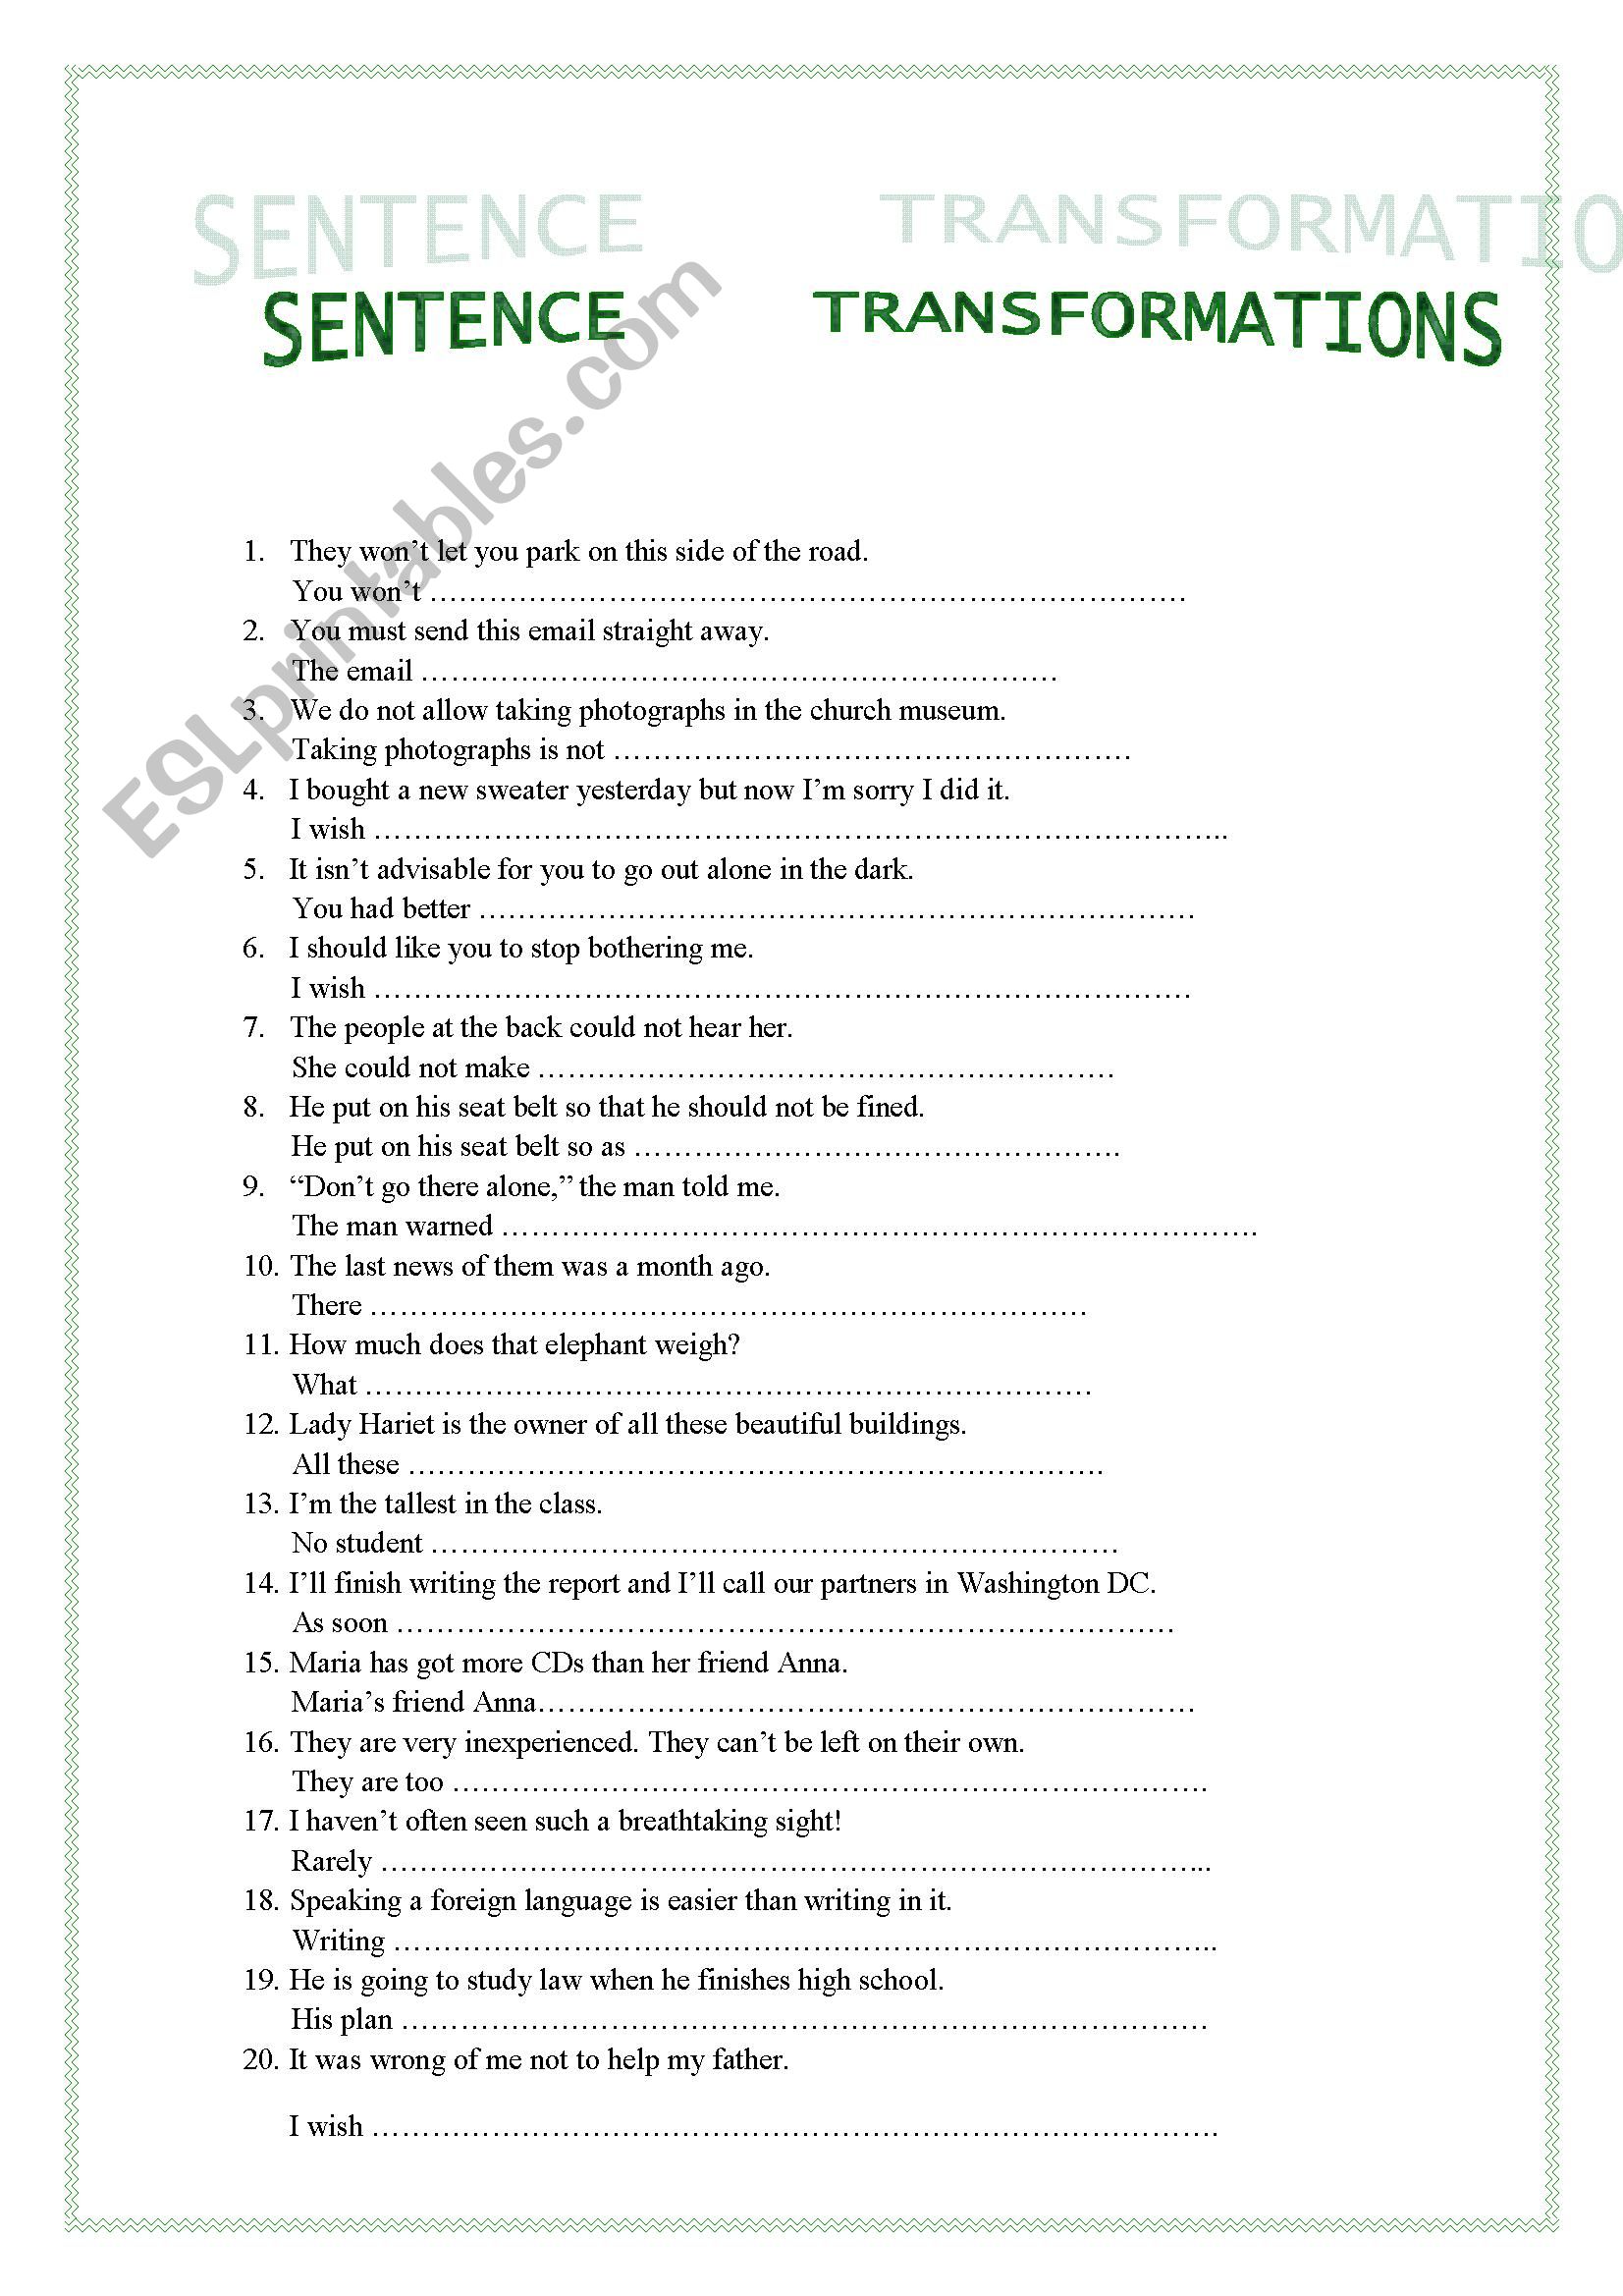 Sentence transformation worksheet